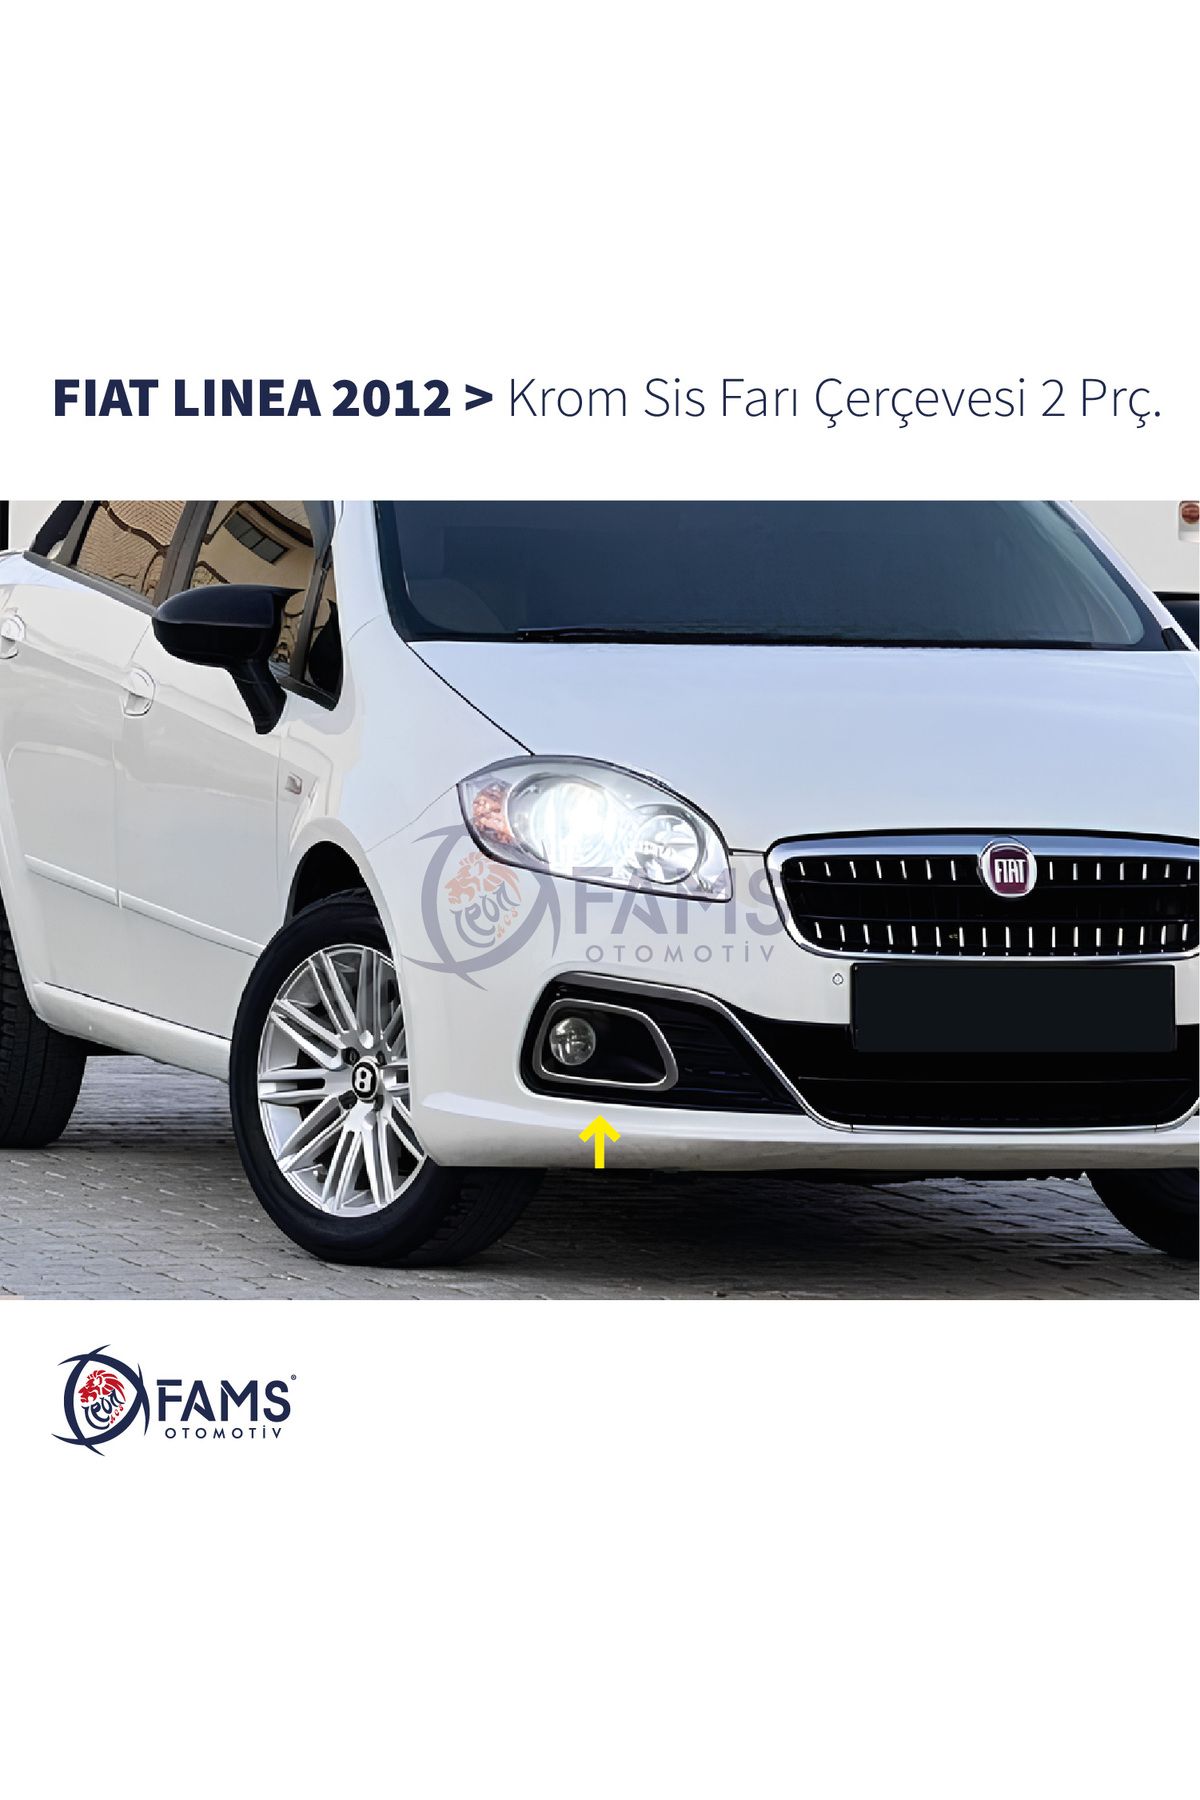 Genel Markalar Fiat Linea Krom Sis Farı Çerçevesi 2 Prç. 2012 Ve Üzeri P.çelik